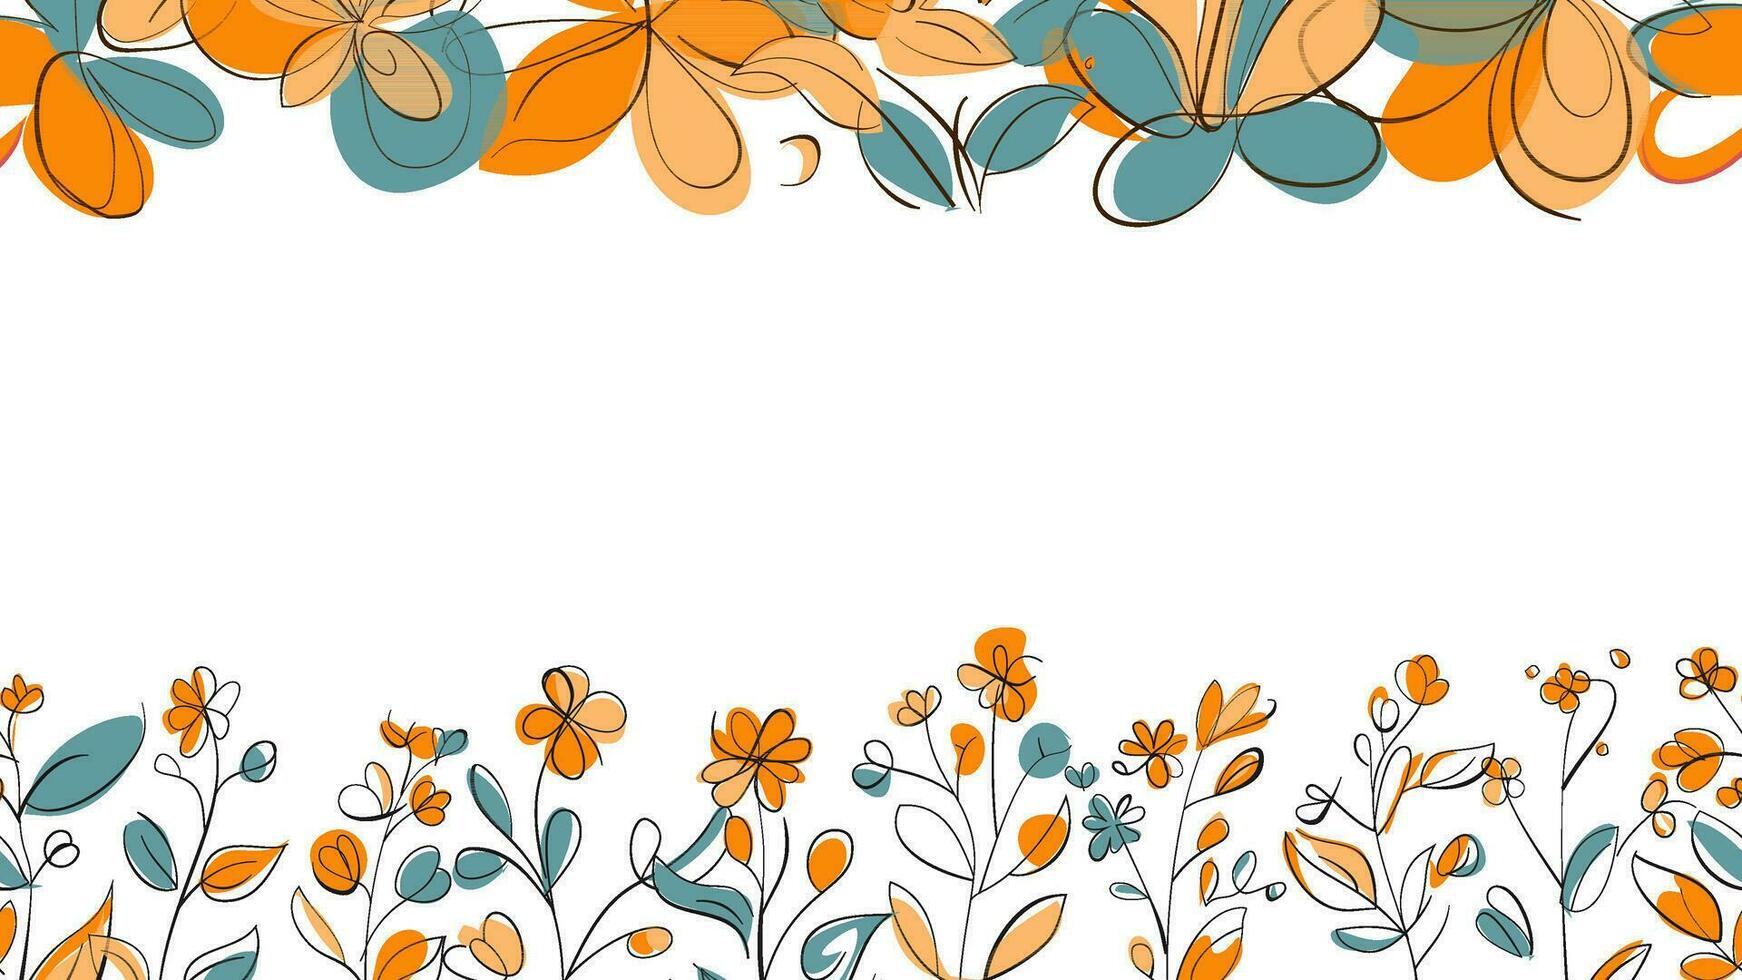 primavera vistoso botánico plano vector horizontal ilustración en blanco antecedentes. bandera floral fondo decorado con maravilloso multicolor floreciente flores y hojas borde.